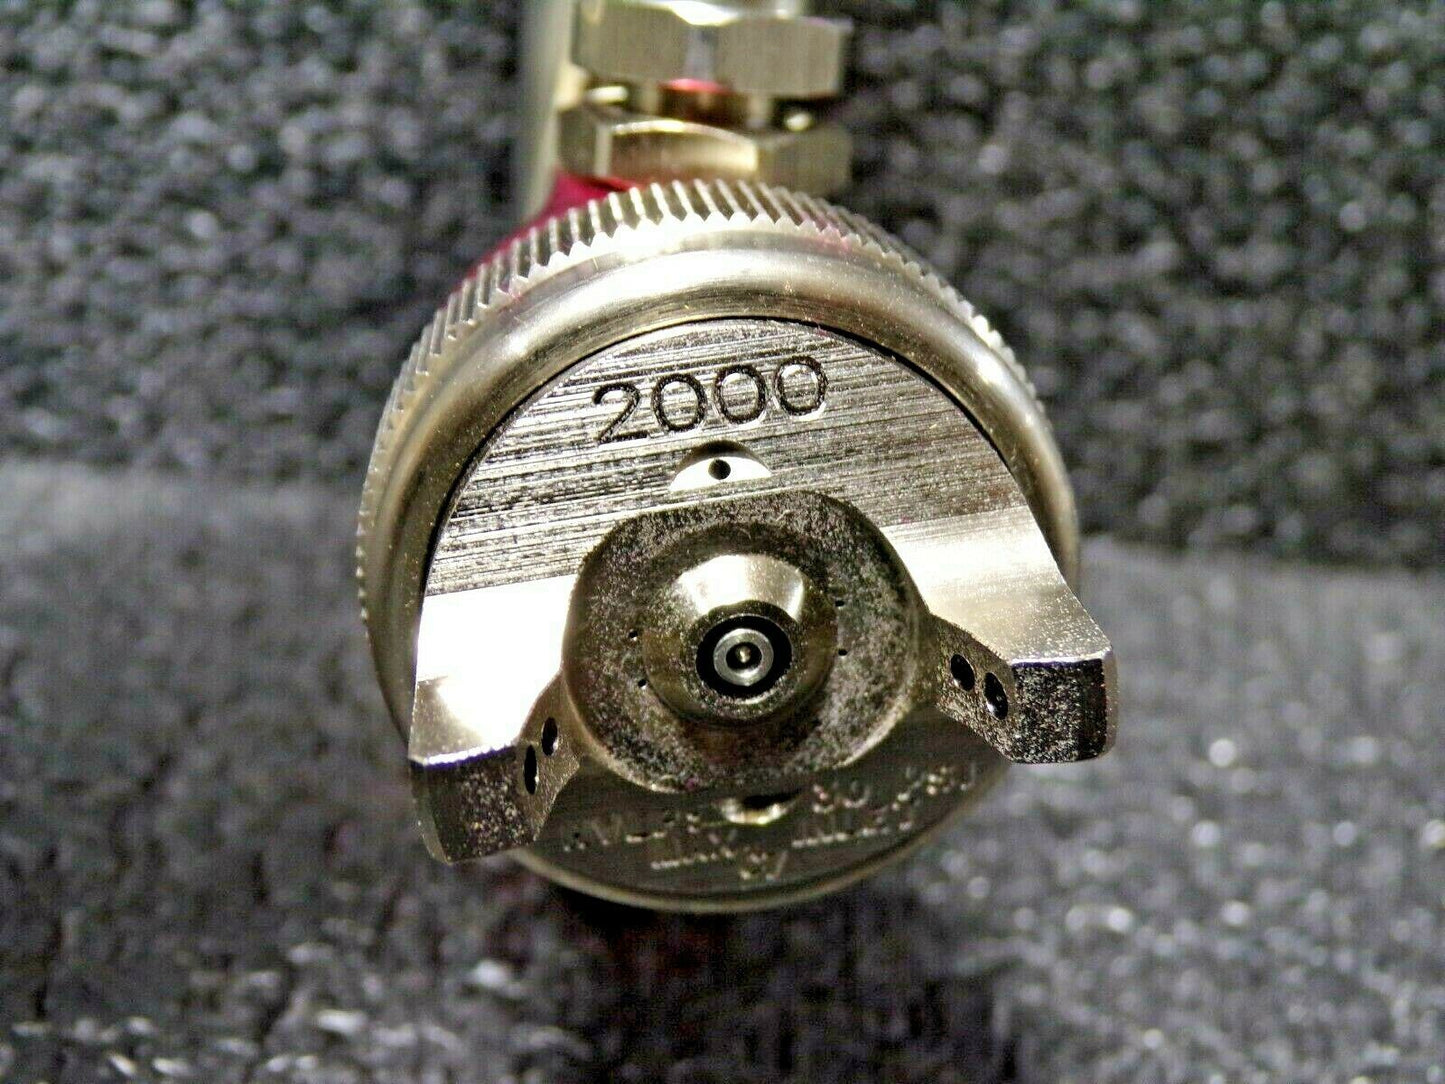 DeVilbiss EXL-520S-18 HVLP Air Spray Gun Siphon Feed (184078706563-WTA03)